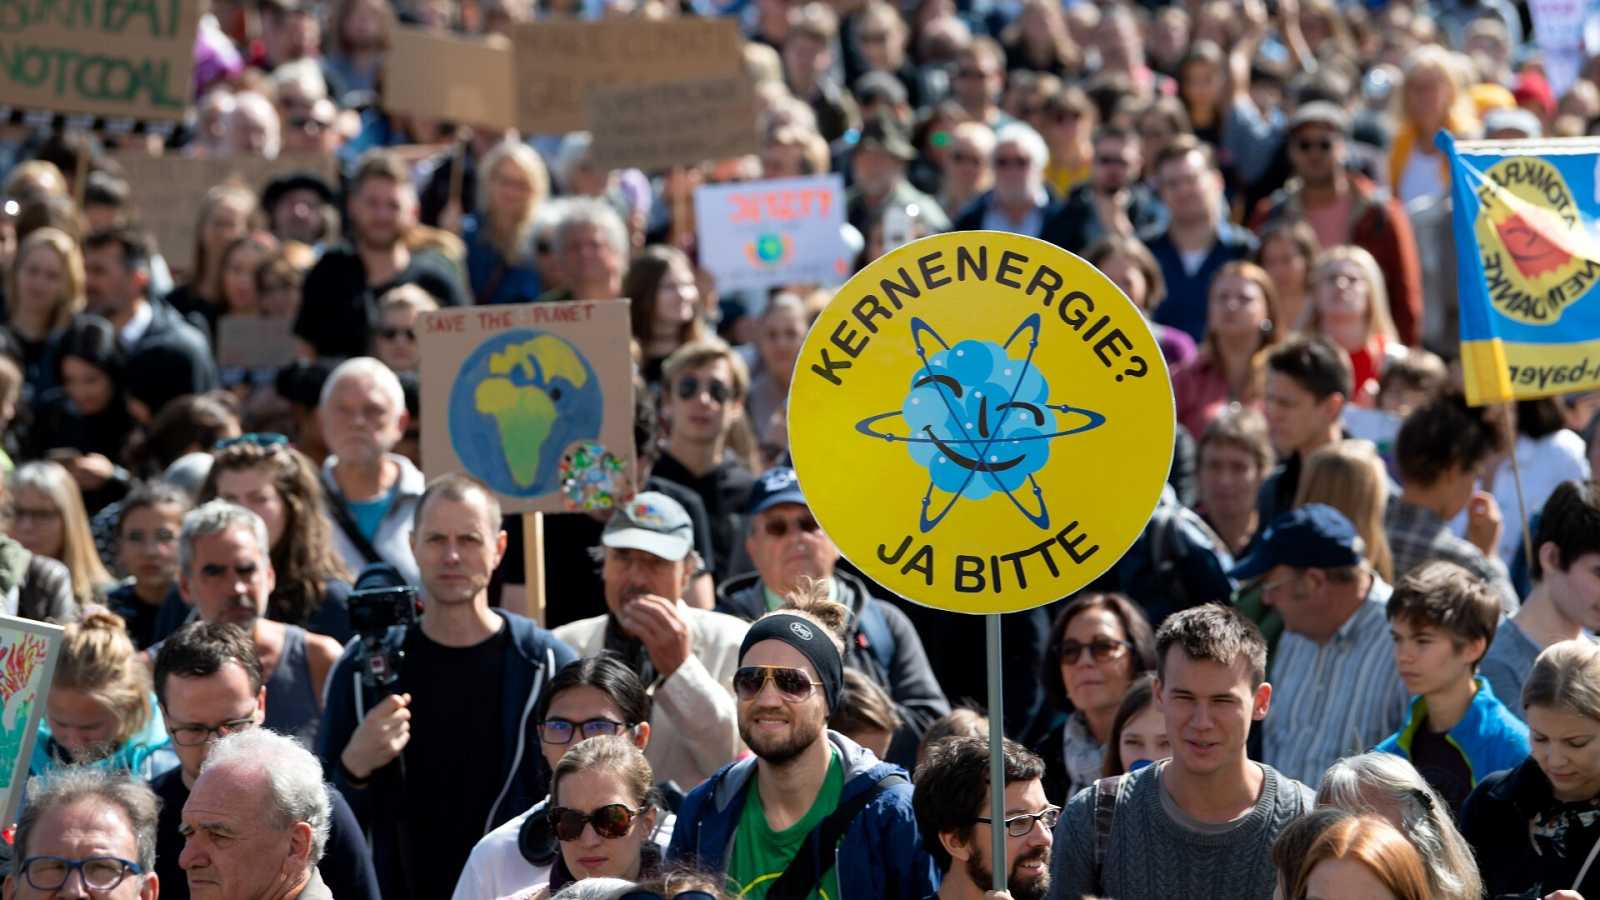 Joves, ecologistes i d'esquerra, així són els alemanys que donen suport a l'adeu nuclear per decret